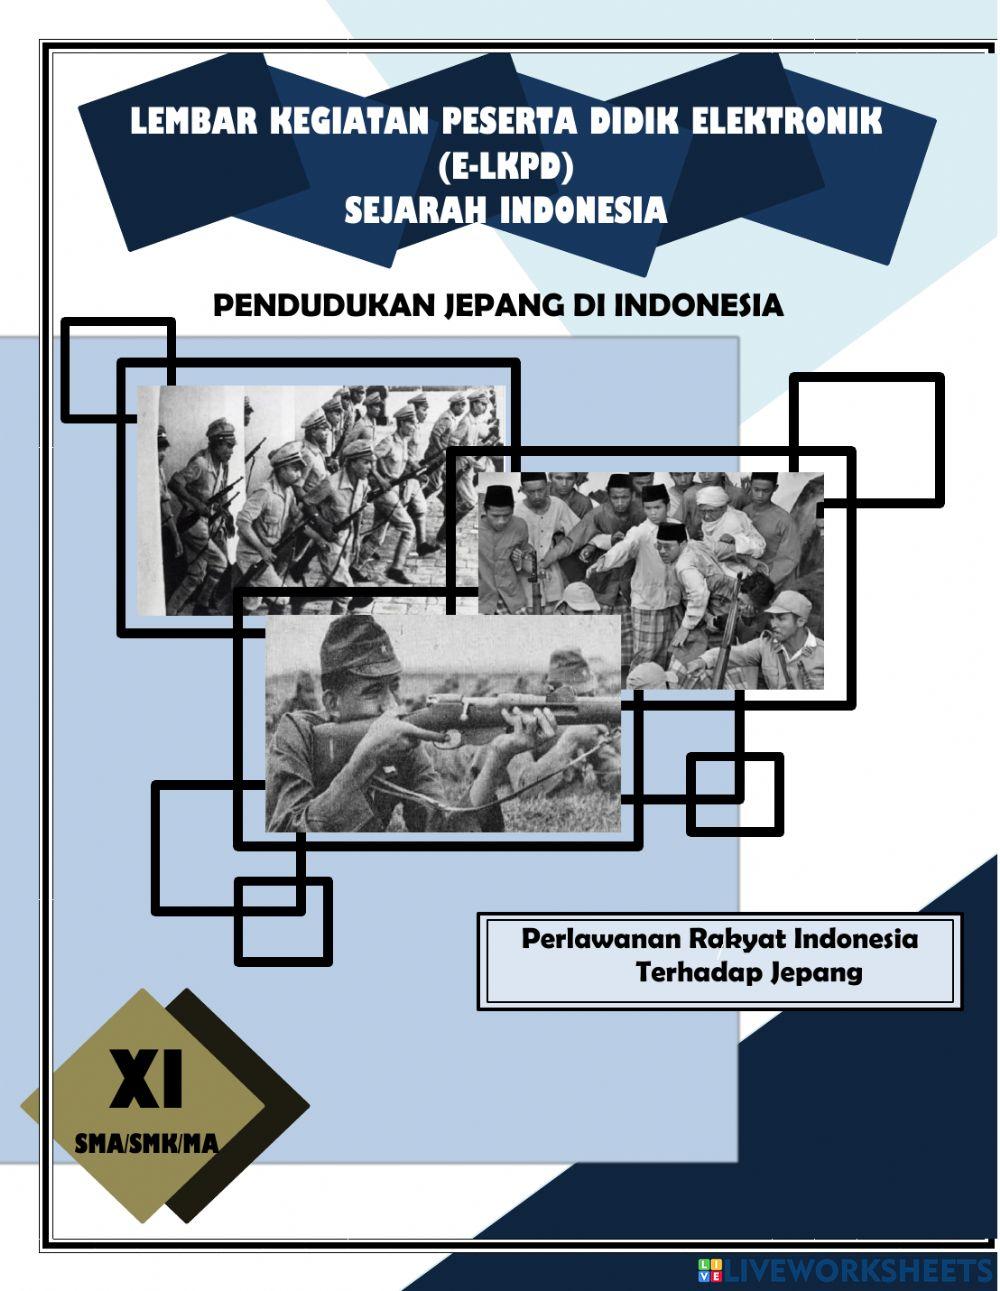 Perlawanan rakyat Indonesia kepada Jepang